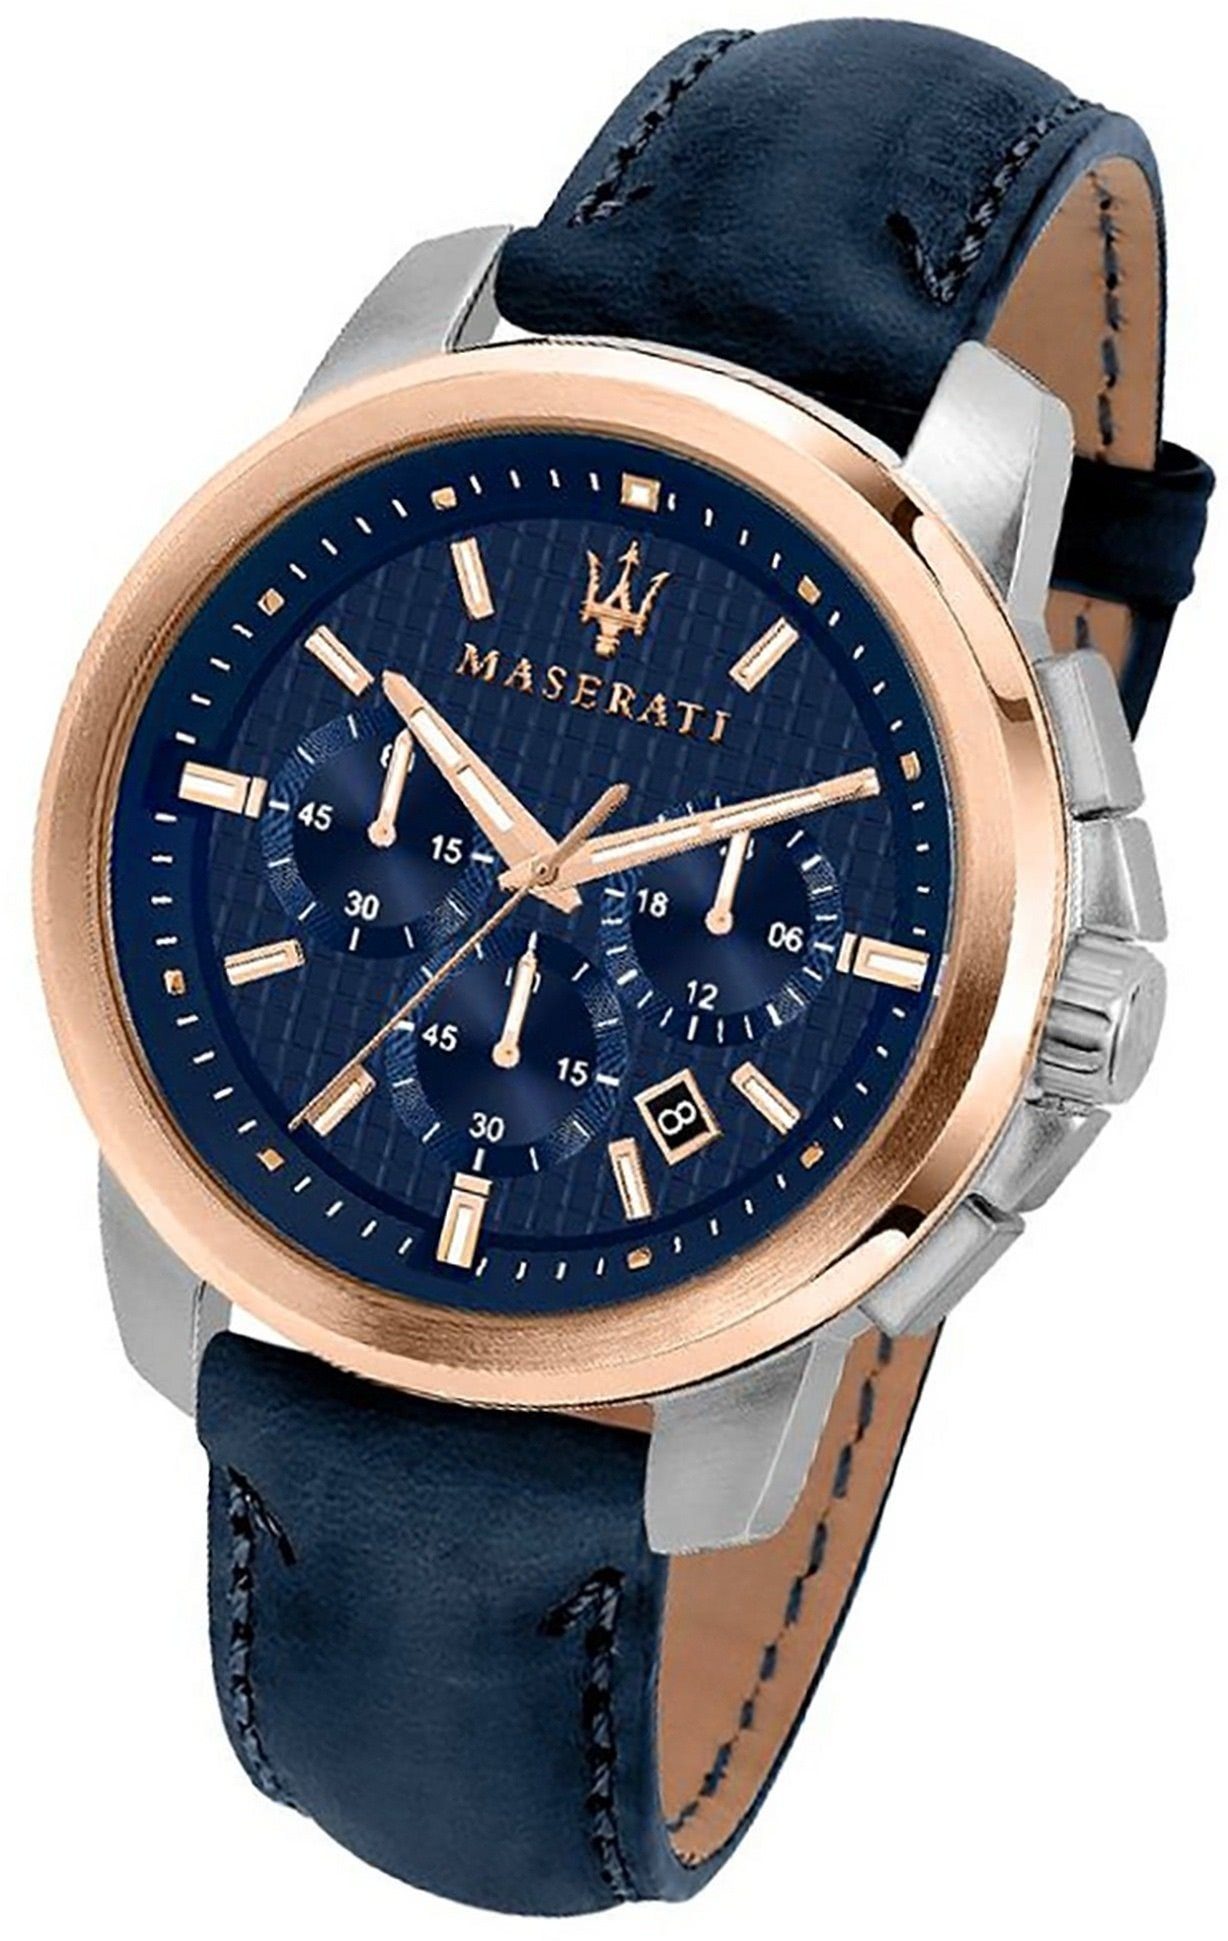 MASERATI Chronograph Maserati Leder Armband-Uhr, Herrenuhr Lederarmband, rundes Gehäuse, groß (ca. 44mm) blau